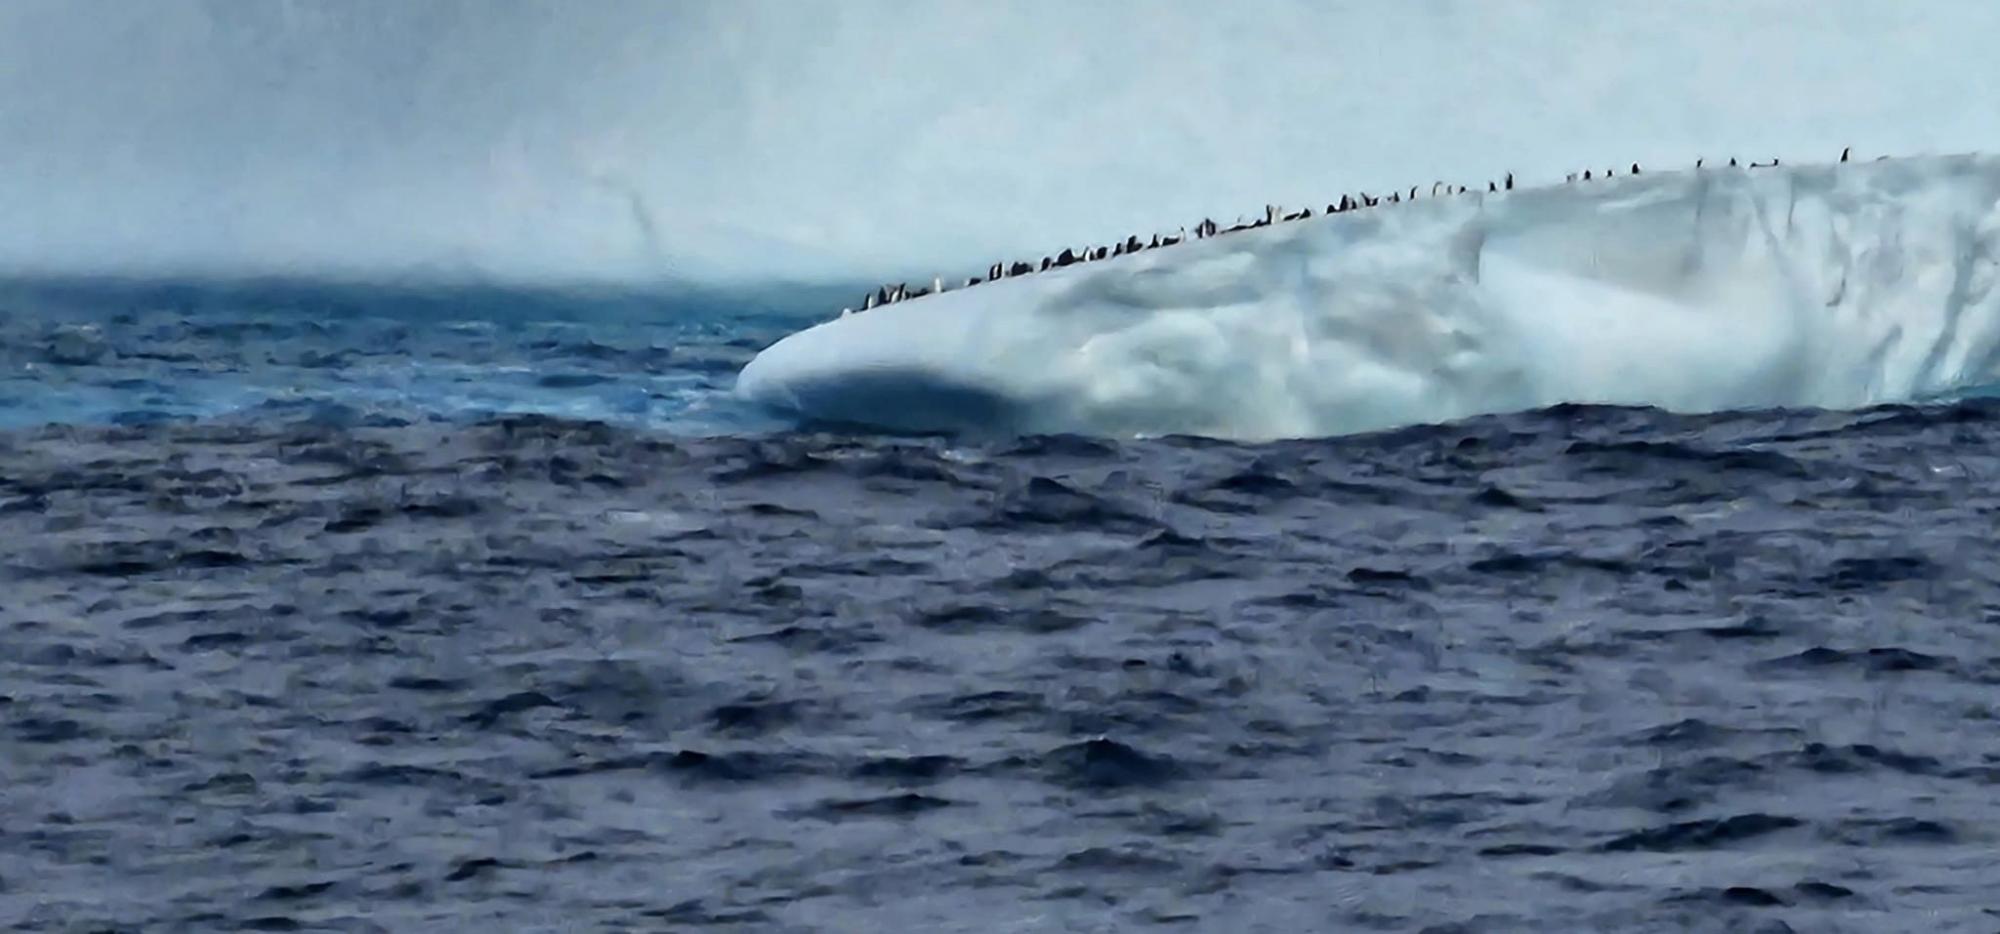 Українські полярники показали величезний айсберг в Антарктиці: неймовірні фото